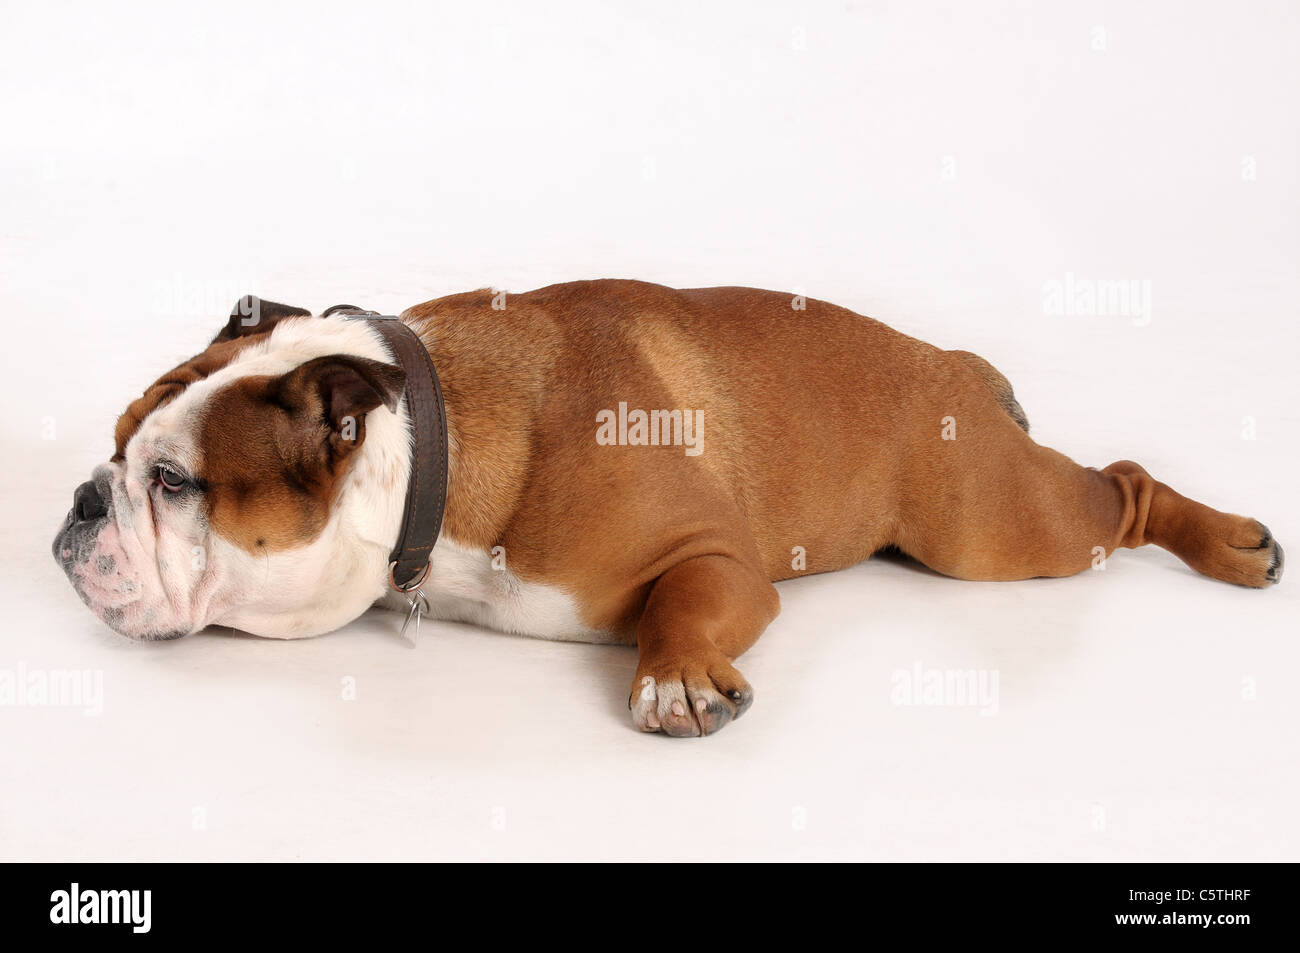 English bulldog on white background Stock Photo